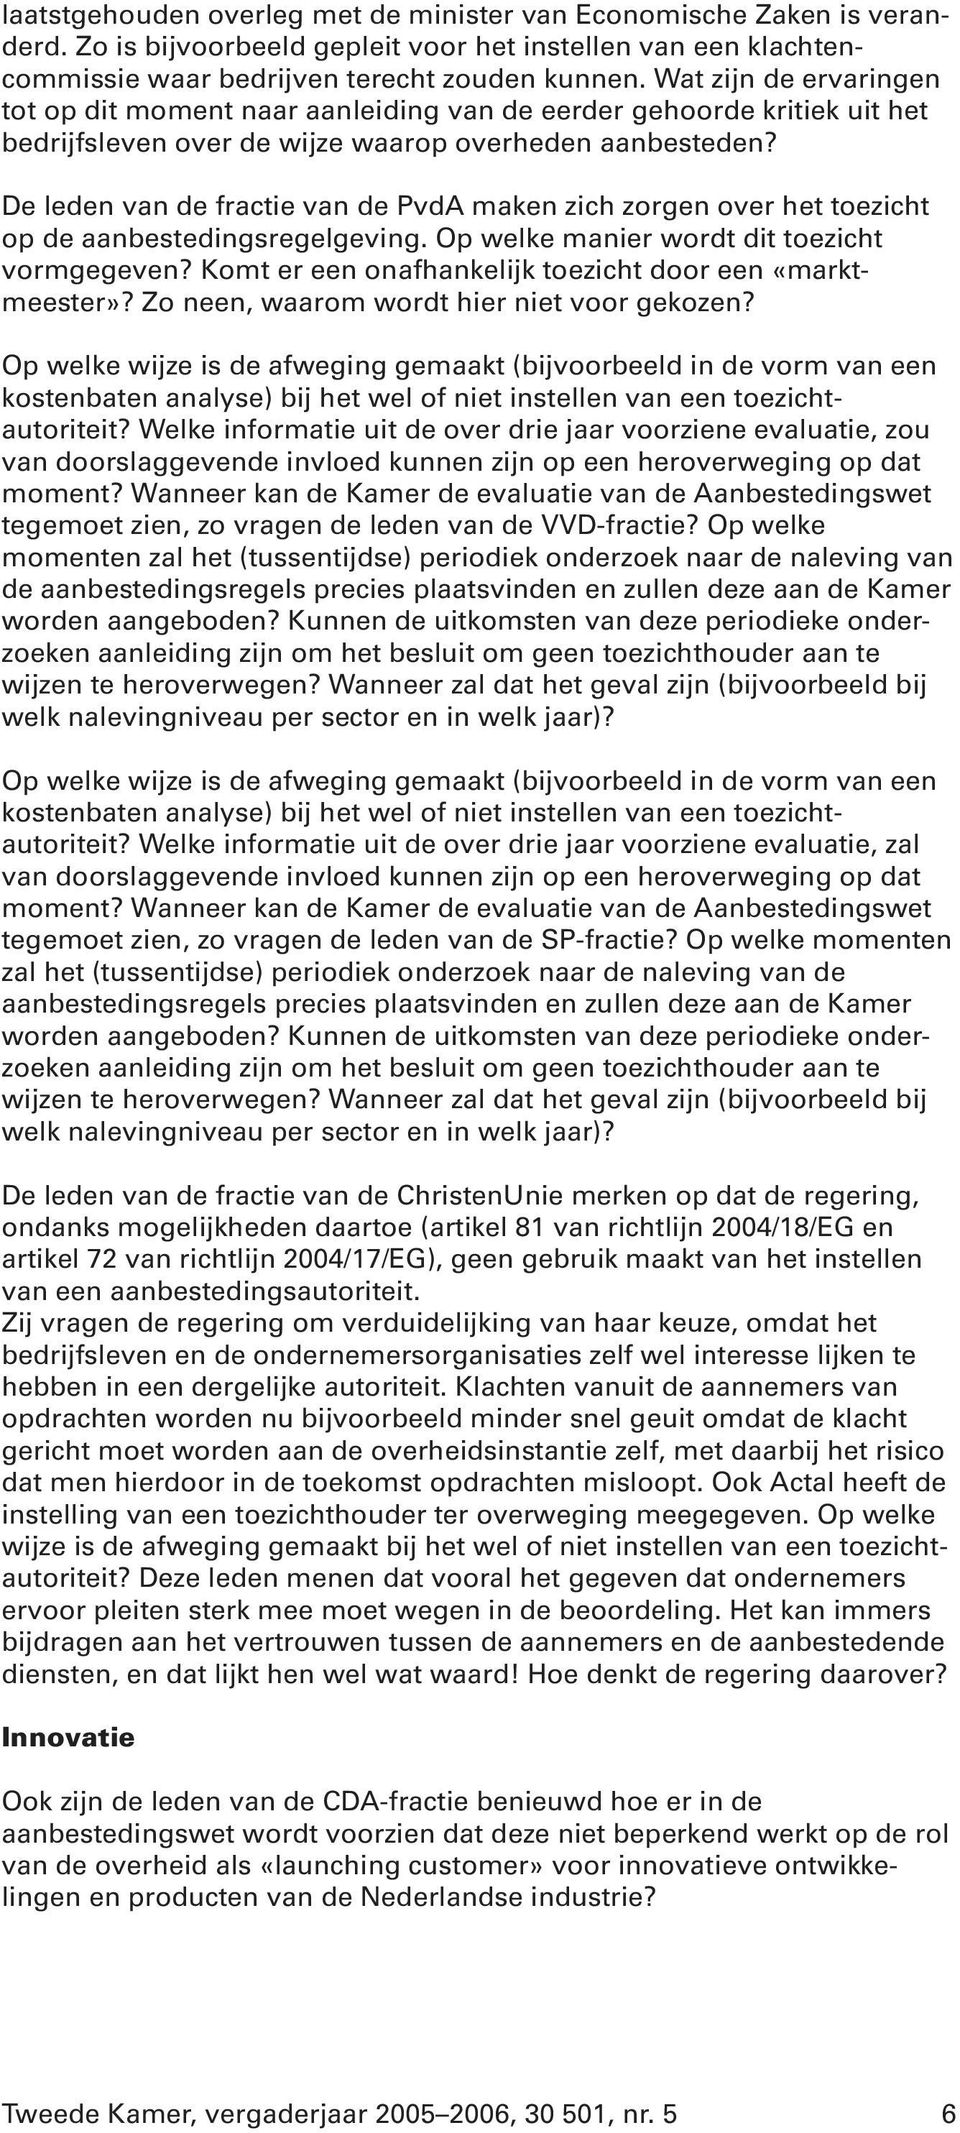 De leden van de fractie van de PvdA maken zich zorgen over het toezicht op de aanbestedingsregelgeving. Op welke manier wordt dit toezicht vormgegeven?